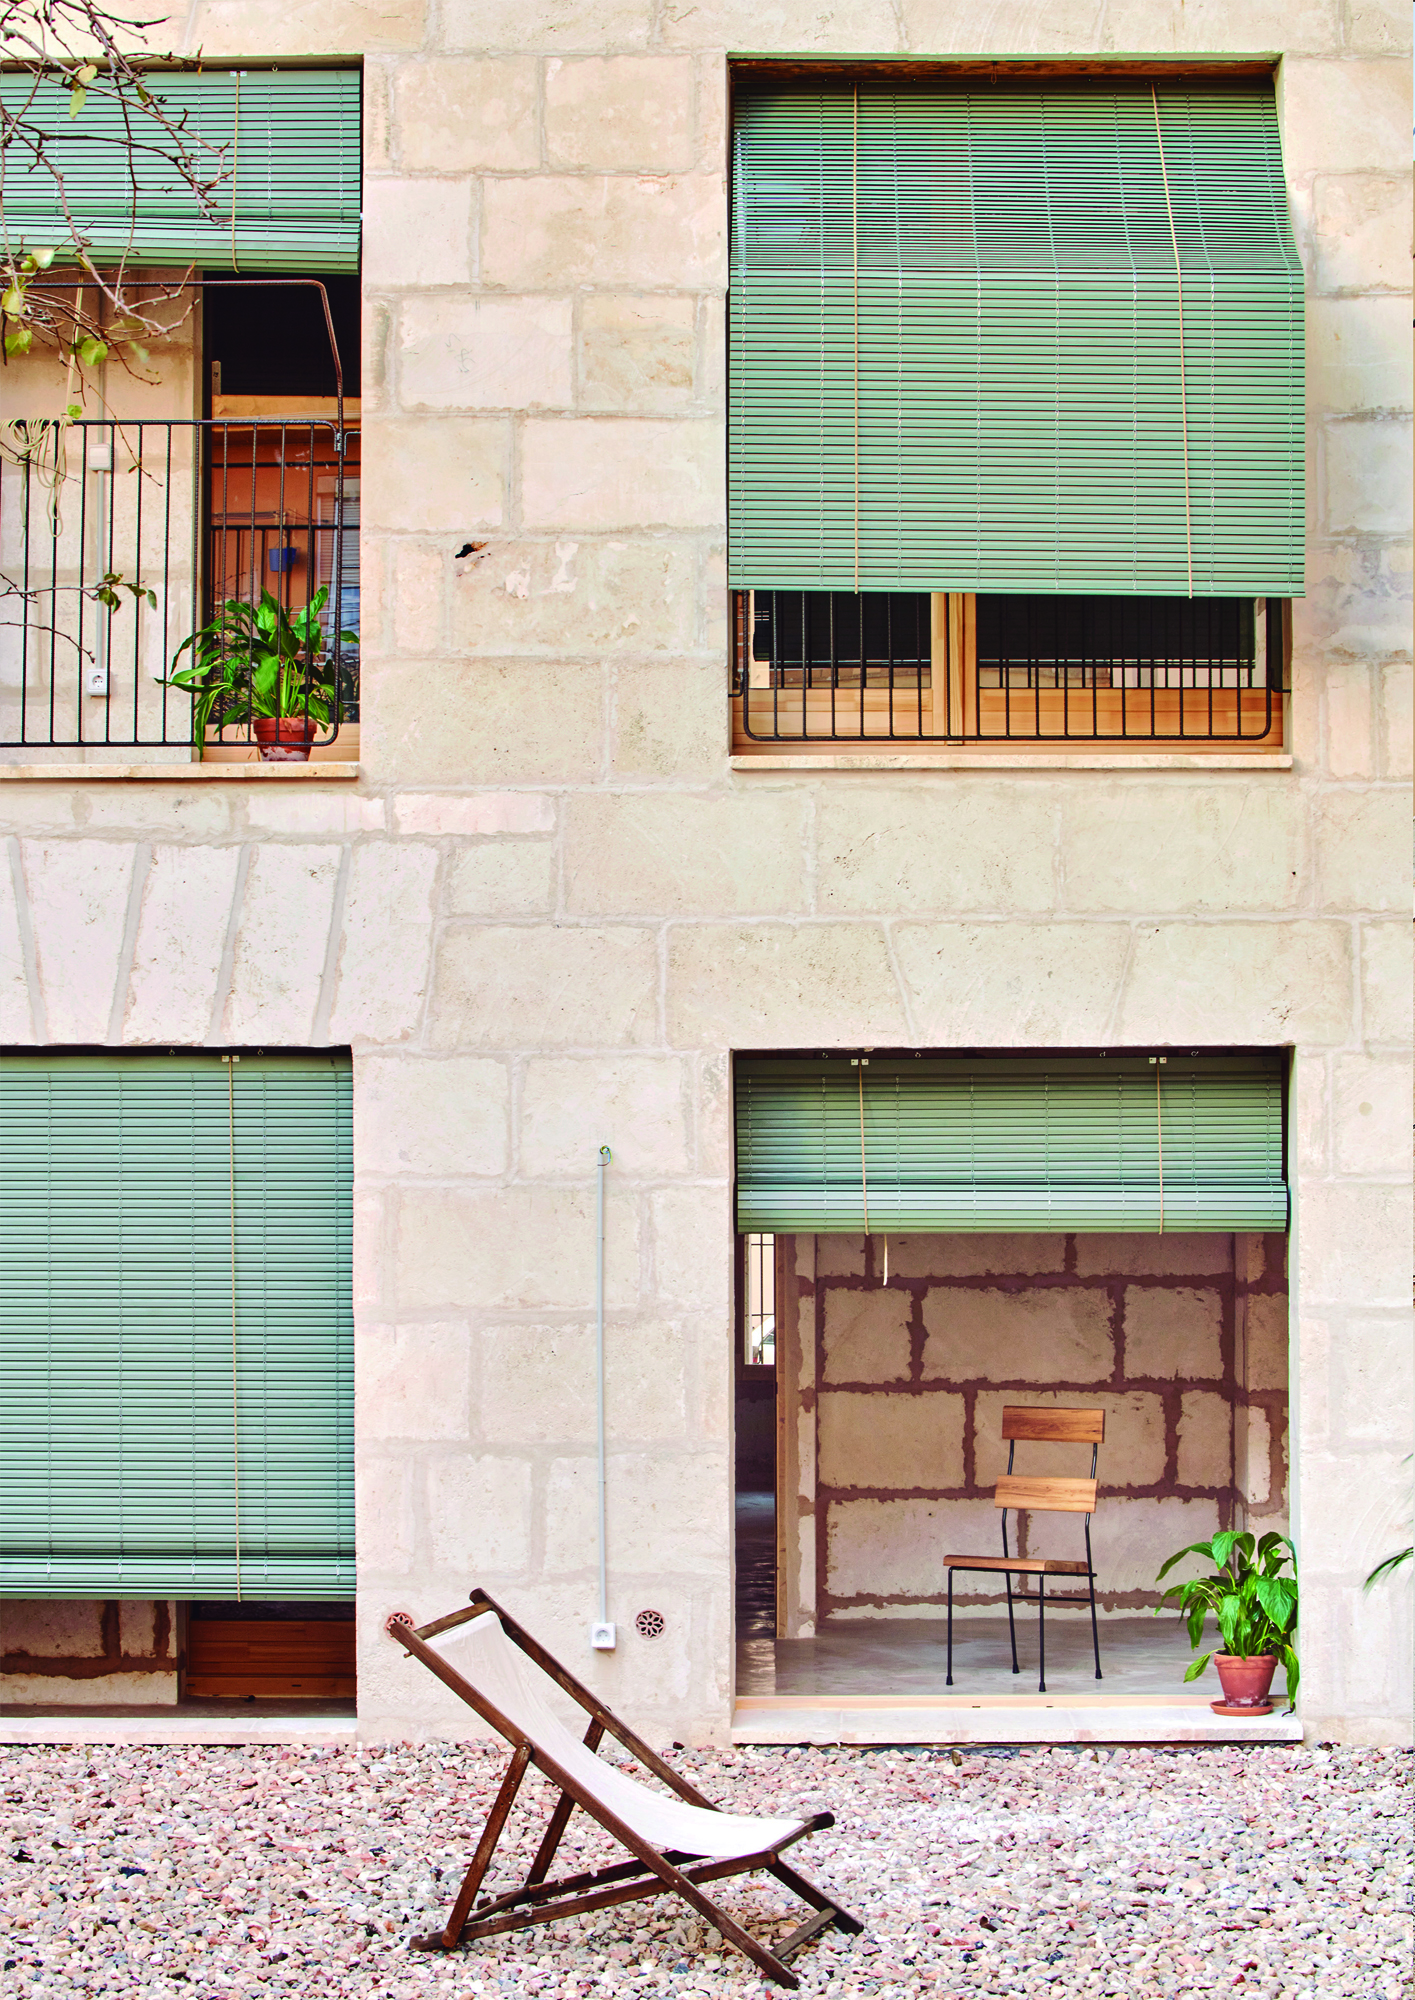 5 viviendas de protección pública en la calle Regal, Son Gotleu, Palma